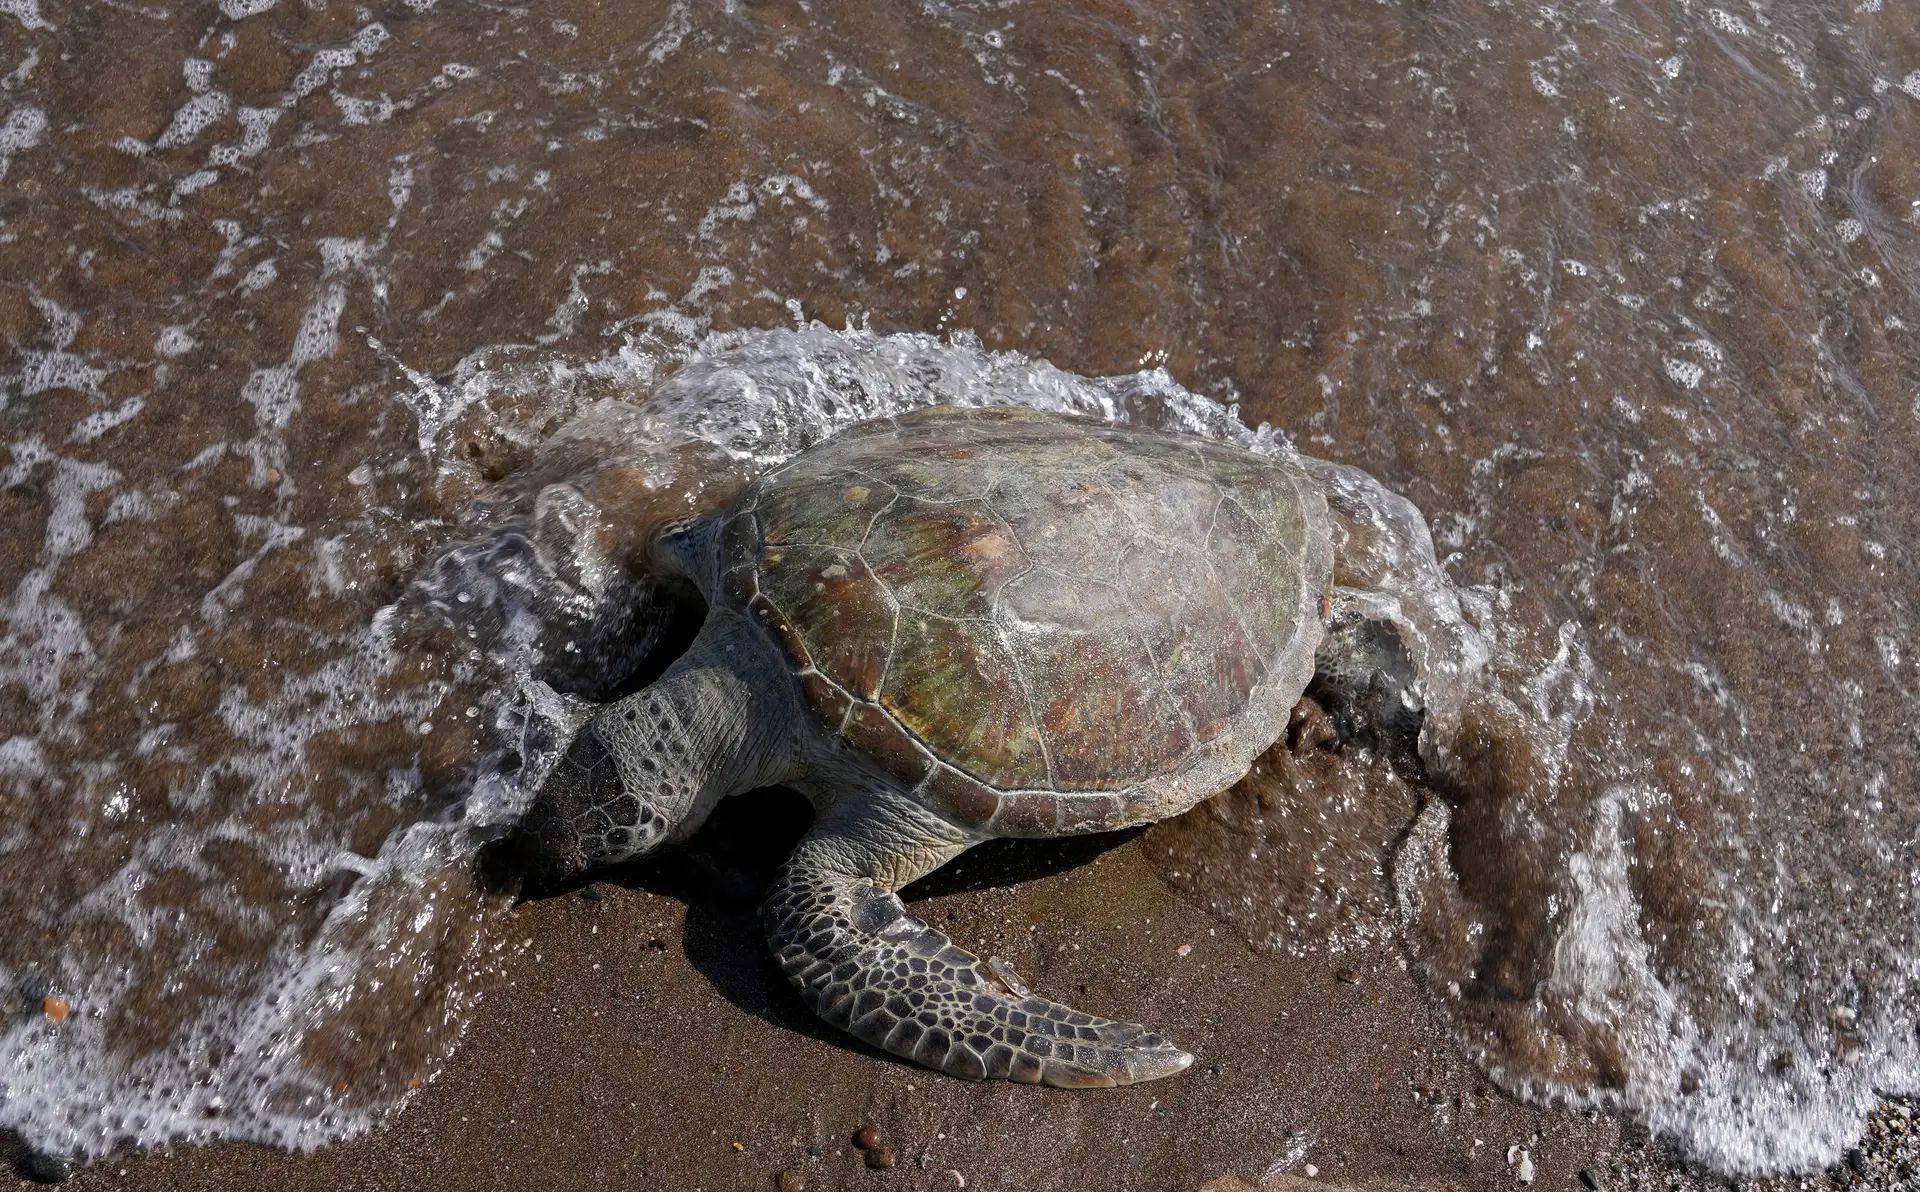 Afinal as tartarugas não são mudas, estudo traz revelações sobre "vocalização" animal